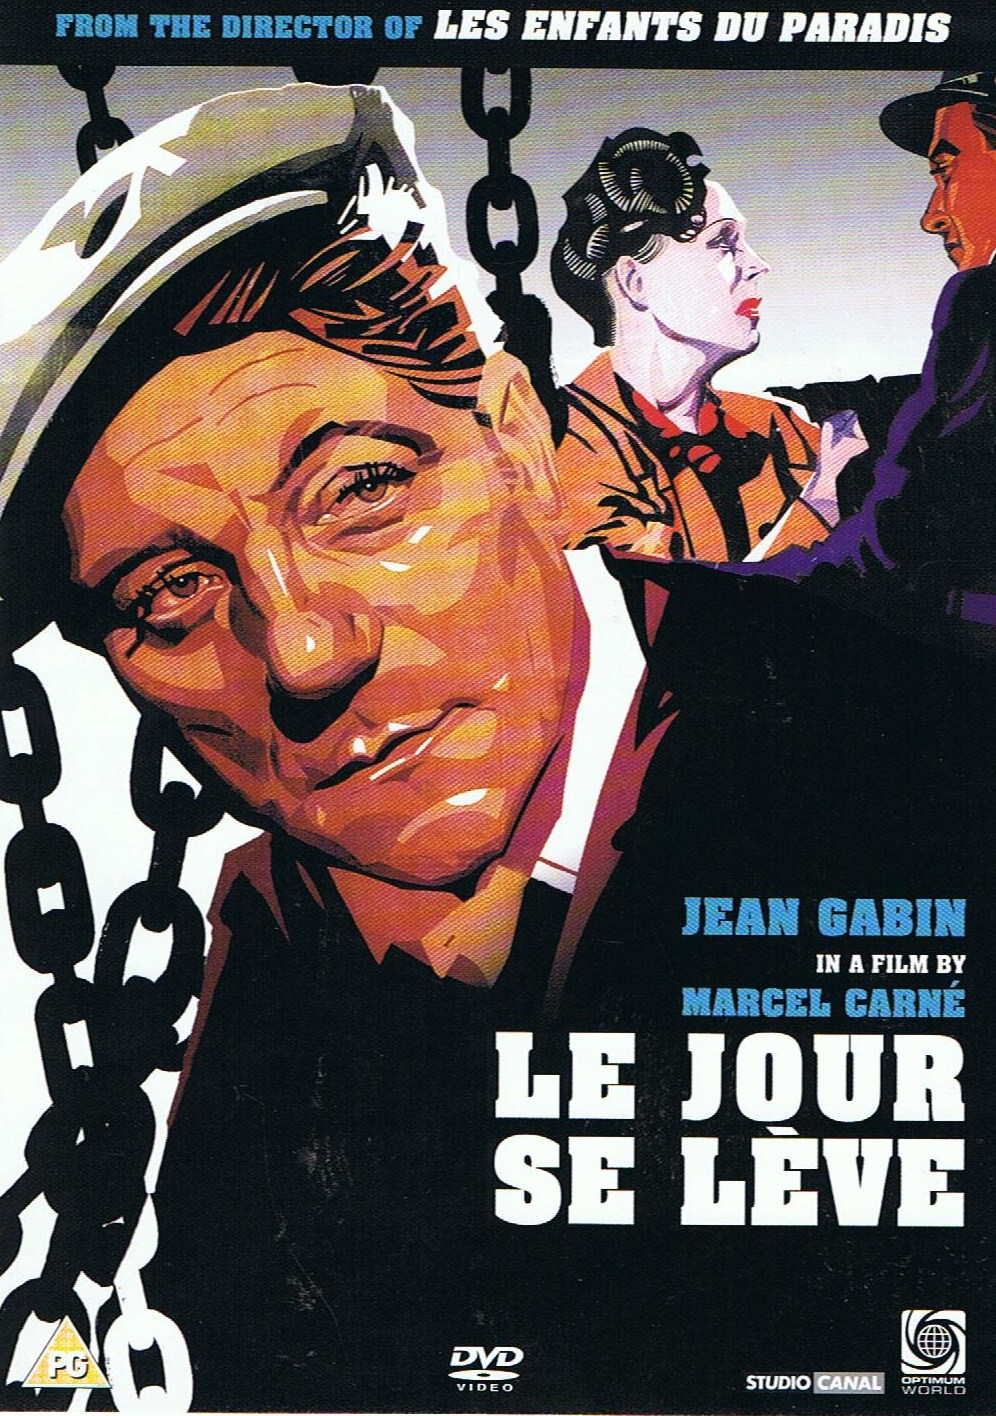 Dr Tony Shaw: Marcel Carné's Le Jour se lève (1939)